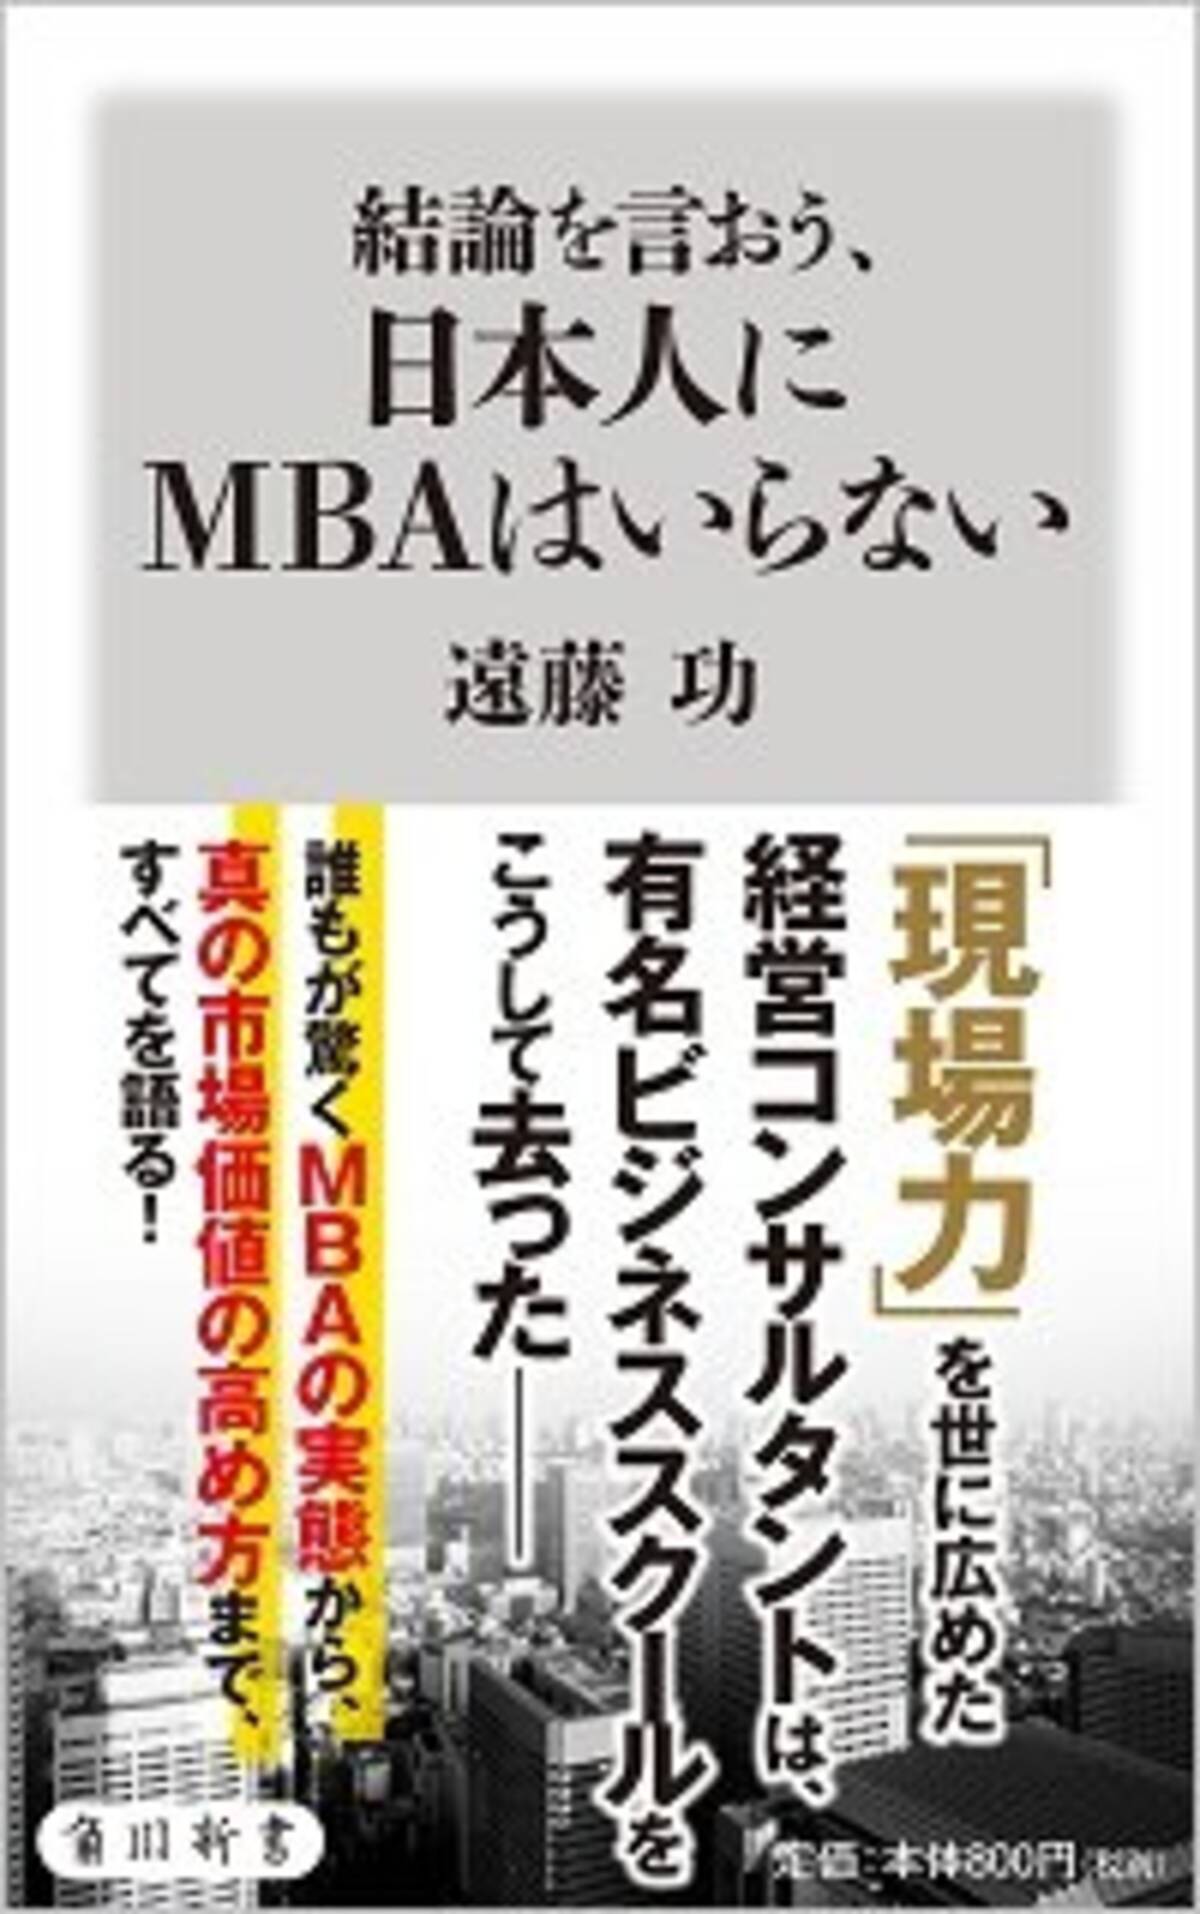 Mbaはビジネスの役に立たない 早稲田元教授が明かす なんちゃってmba 教育のおサムい実情 17年1月16日 エキサイトニュース